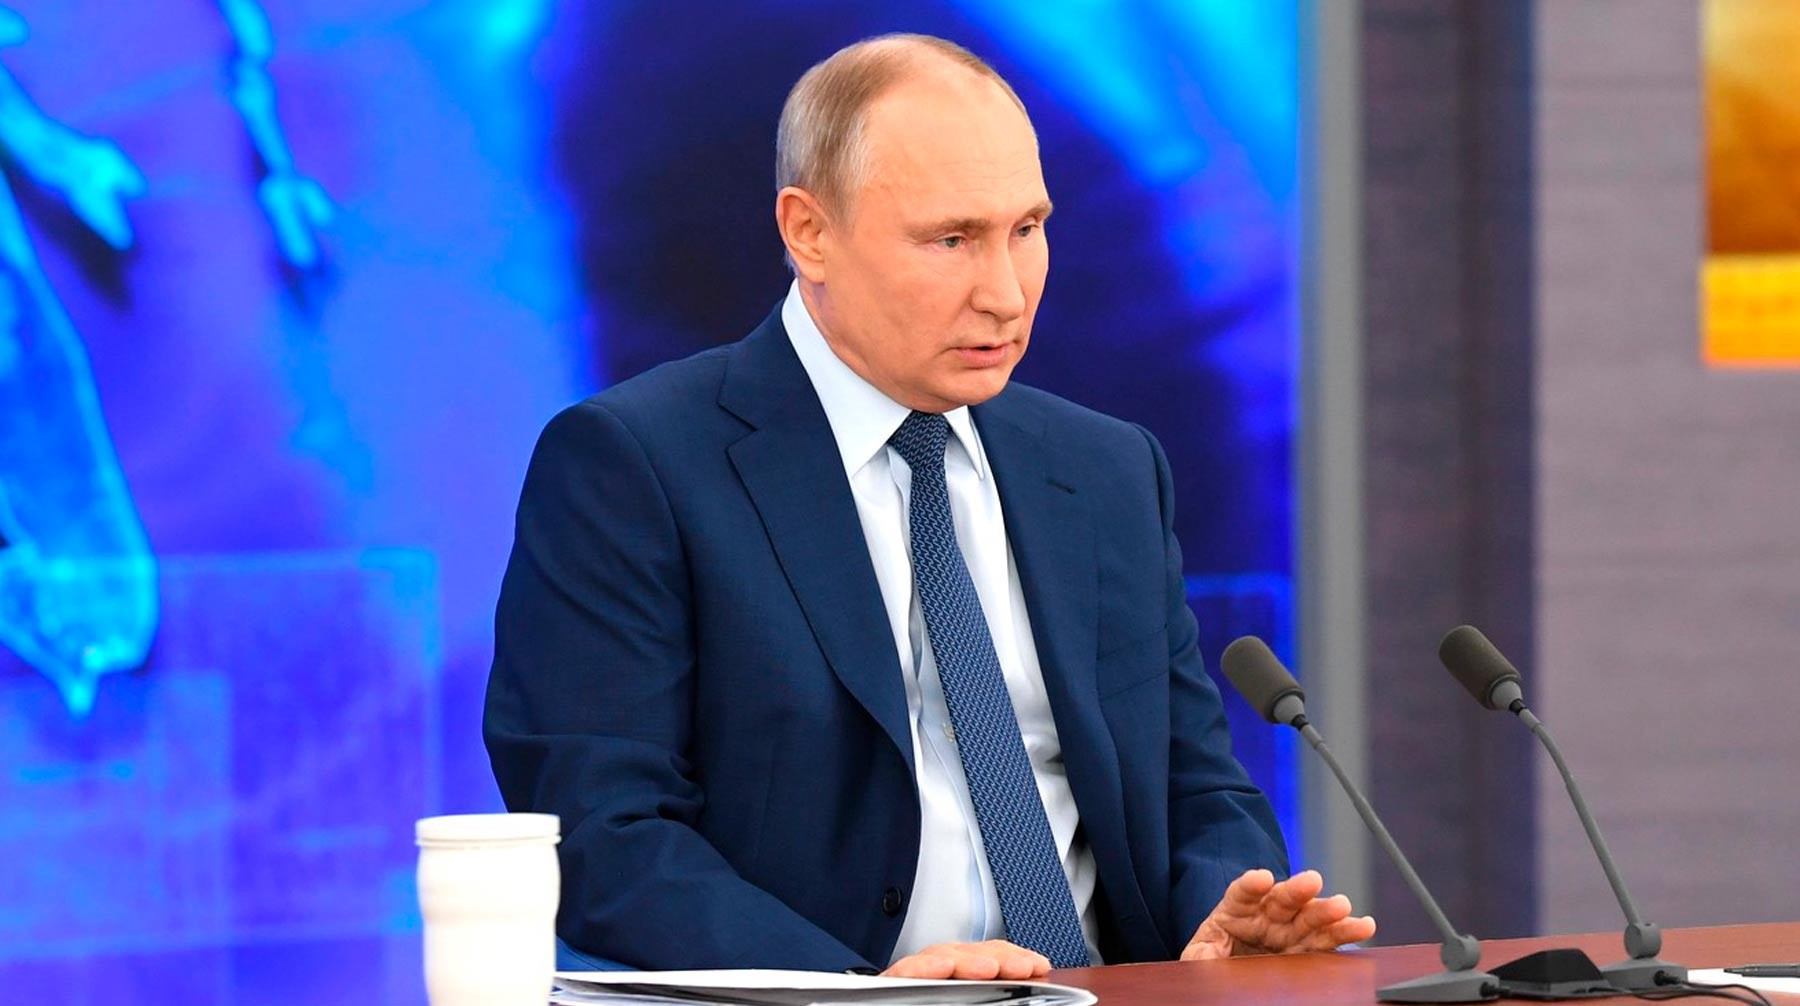 Dailystorm - Проблем — море: Путин сравнил 2020 год с погодой